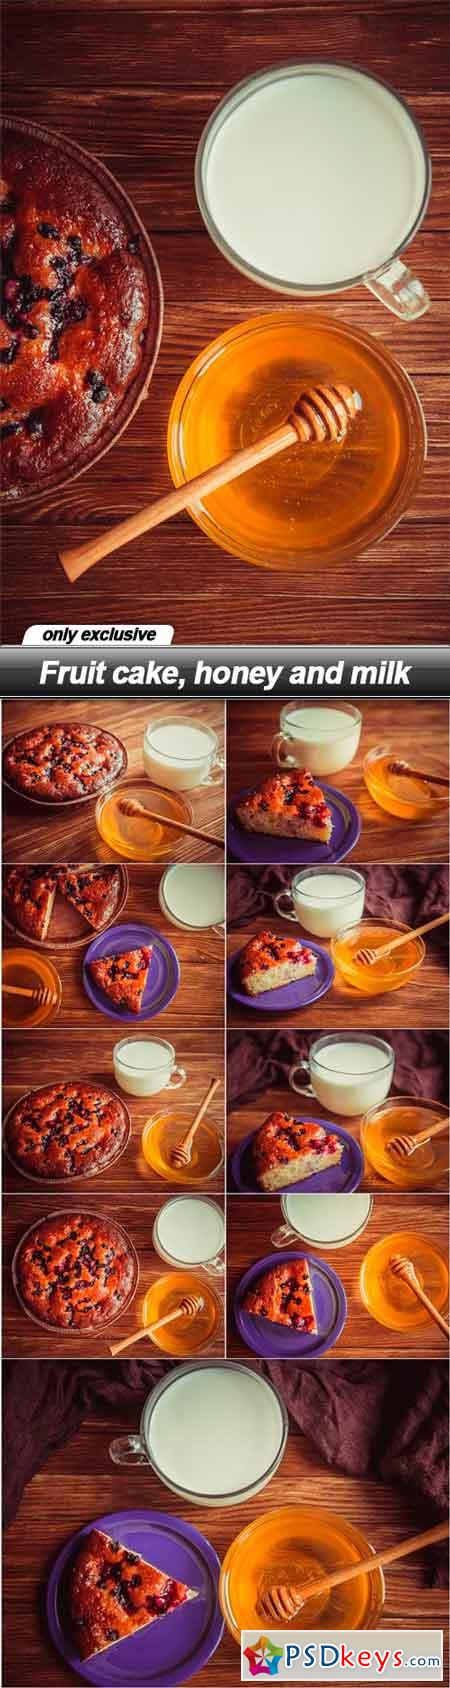 Fruit cake, honey and milk - 10 UHQ JPEG